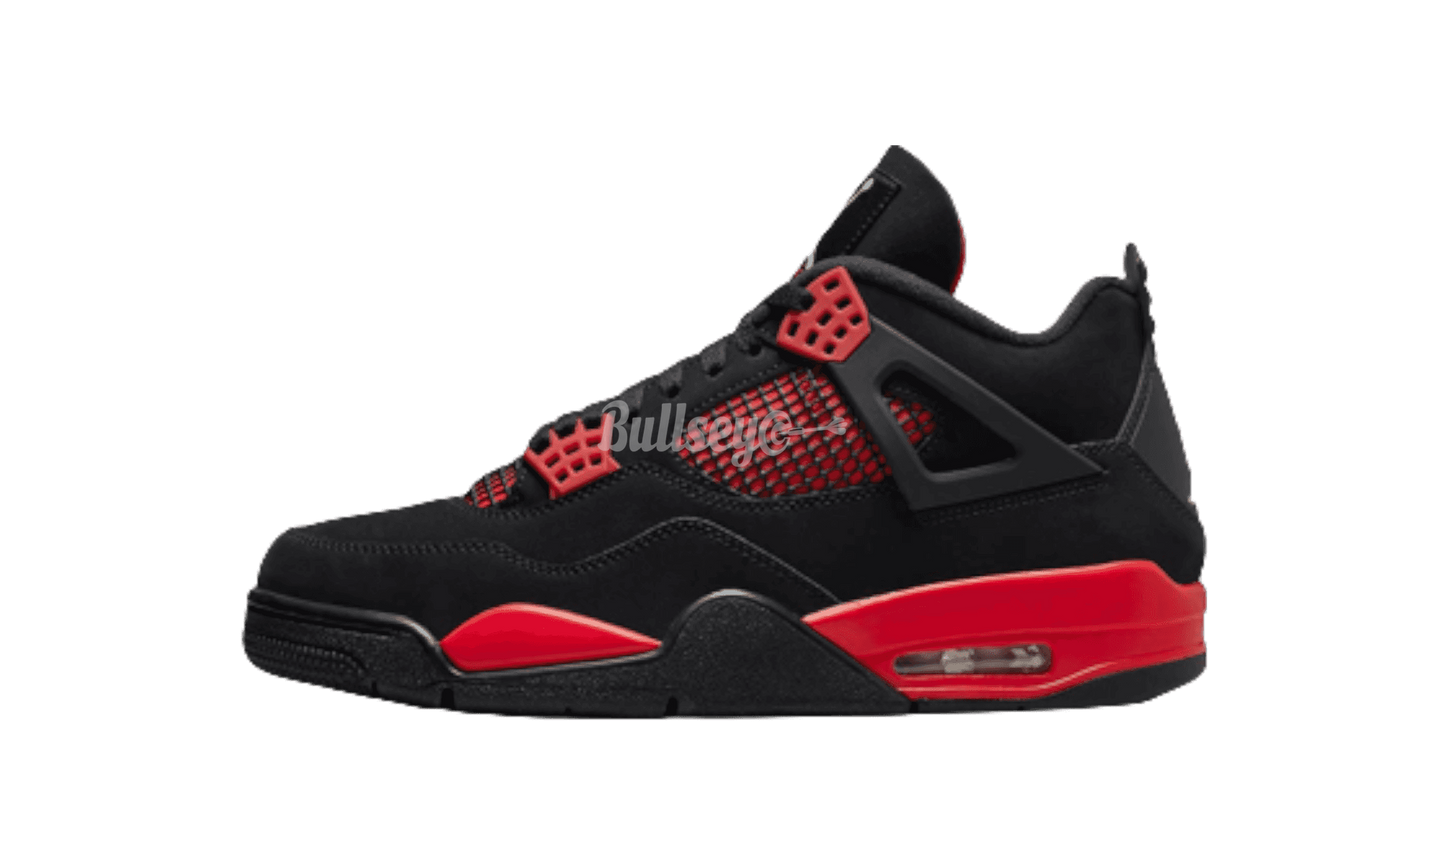 Air Jordan 4 Retro "Red Thunder" GS-Bullseye Sneaker Boutique